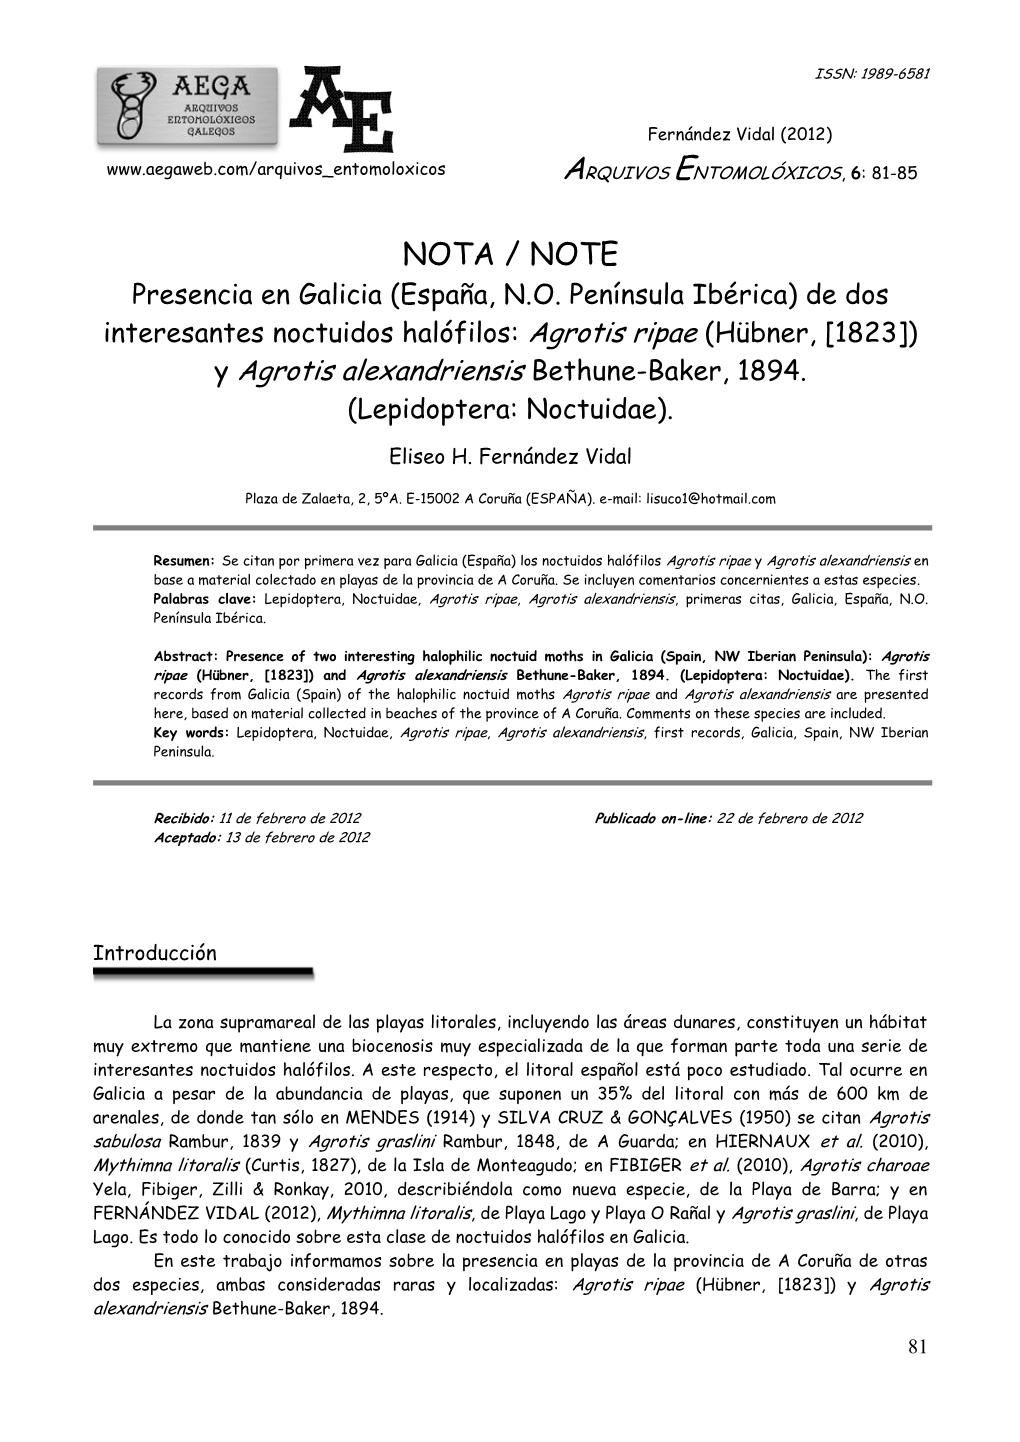 NOTA / NOTE Presencia En Galicia (España, N.O